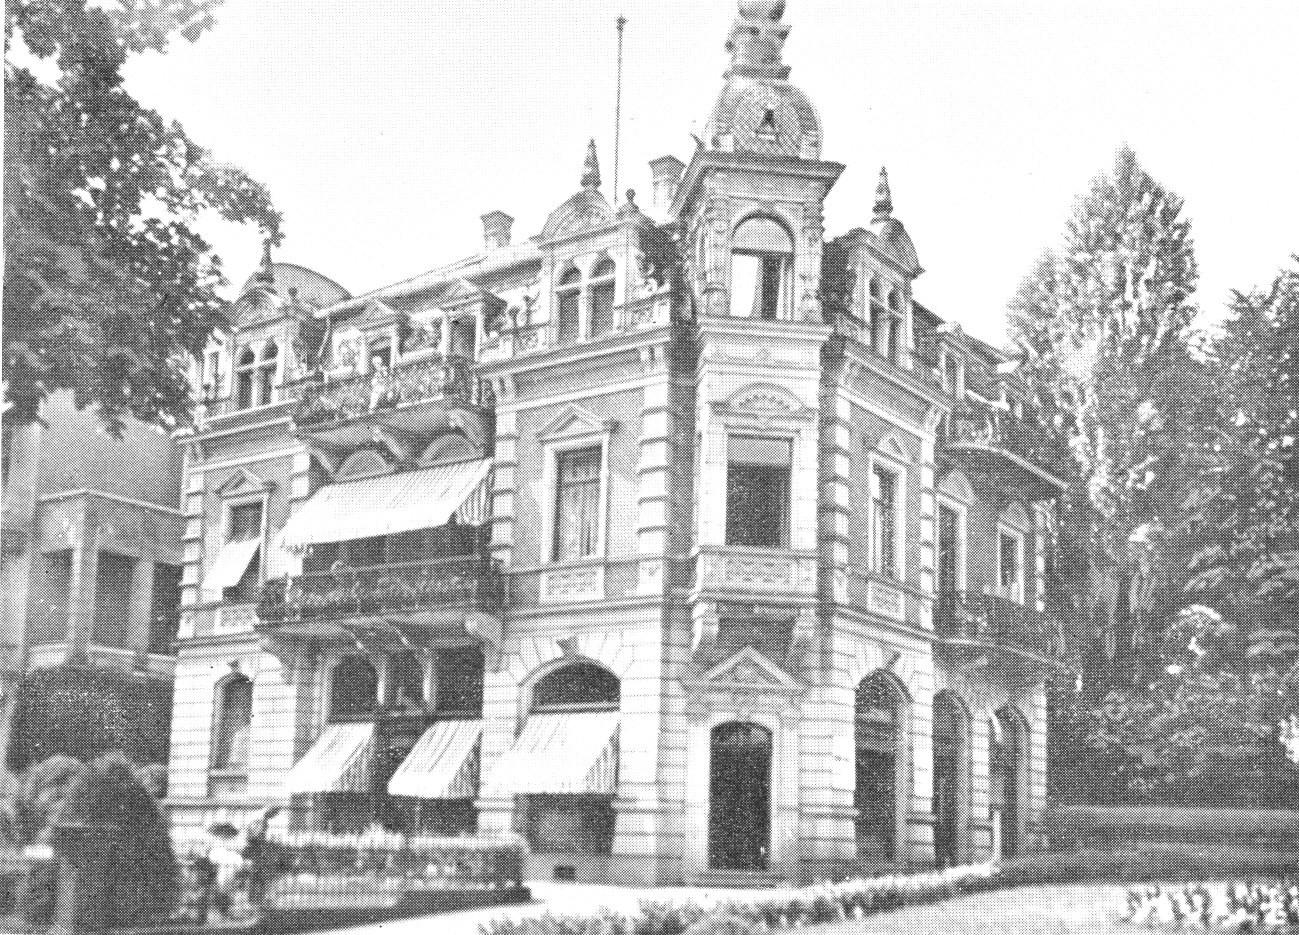 Bad Nauheim, Terrassenstrasse 10 - Hotel Grunewald, Foto um 1890, Schenkung / Museum Bad Nauheim